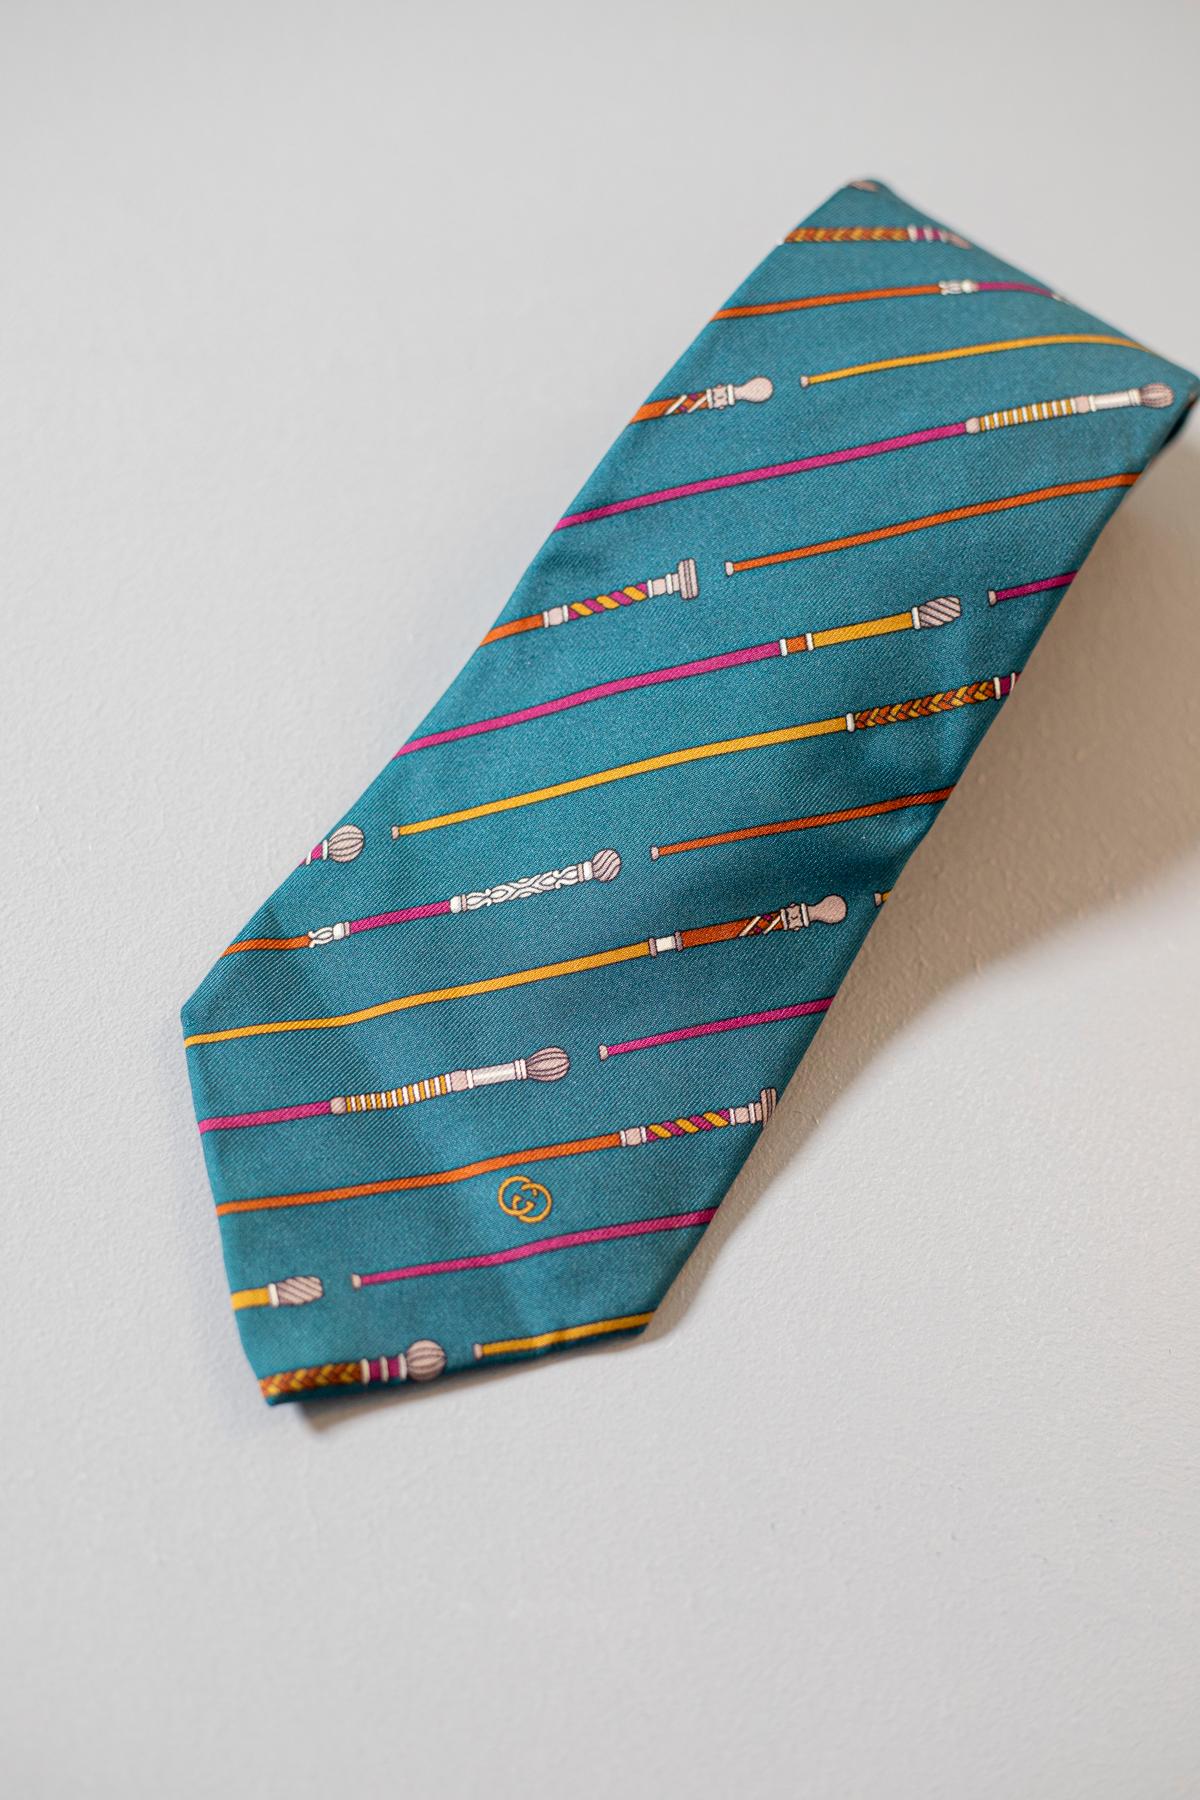 Diese von Gucci entworfene Krawatte ist aus reiner Seide gefertigt. Dieses schlichte, aber elegante Accessoire zeigt bunte Spazierstöcke auf quetzalgrünem Hintergrund. Diese Krawatte ist perfekt für jede Gelegenheit, da sie stilvoll und